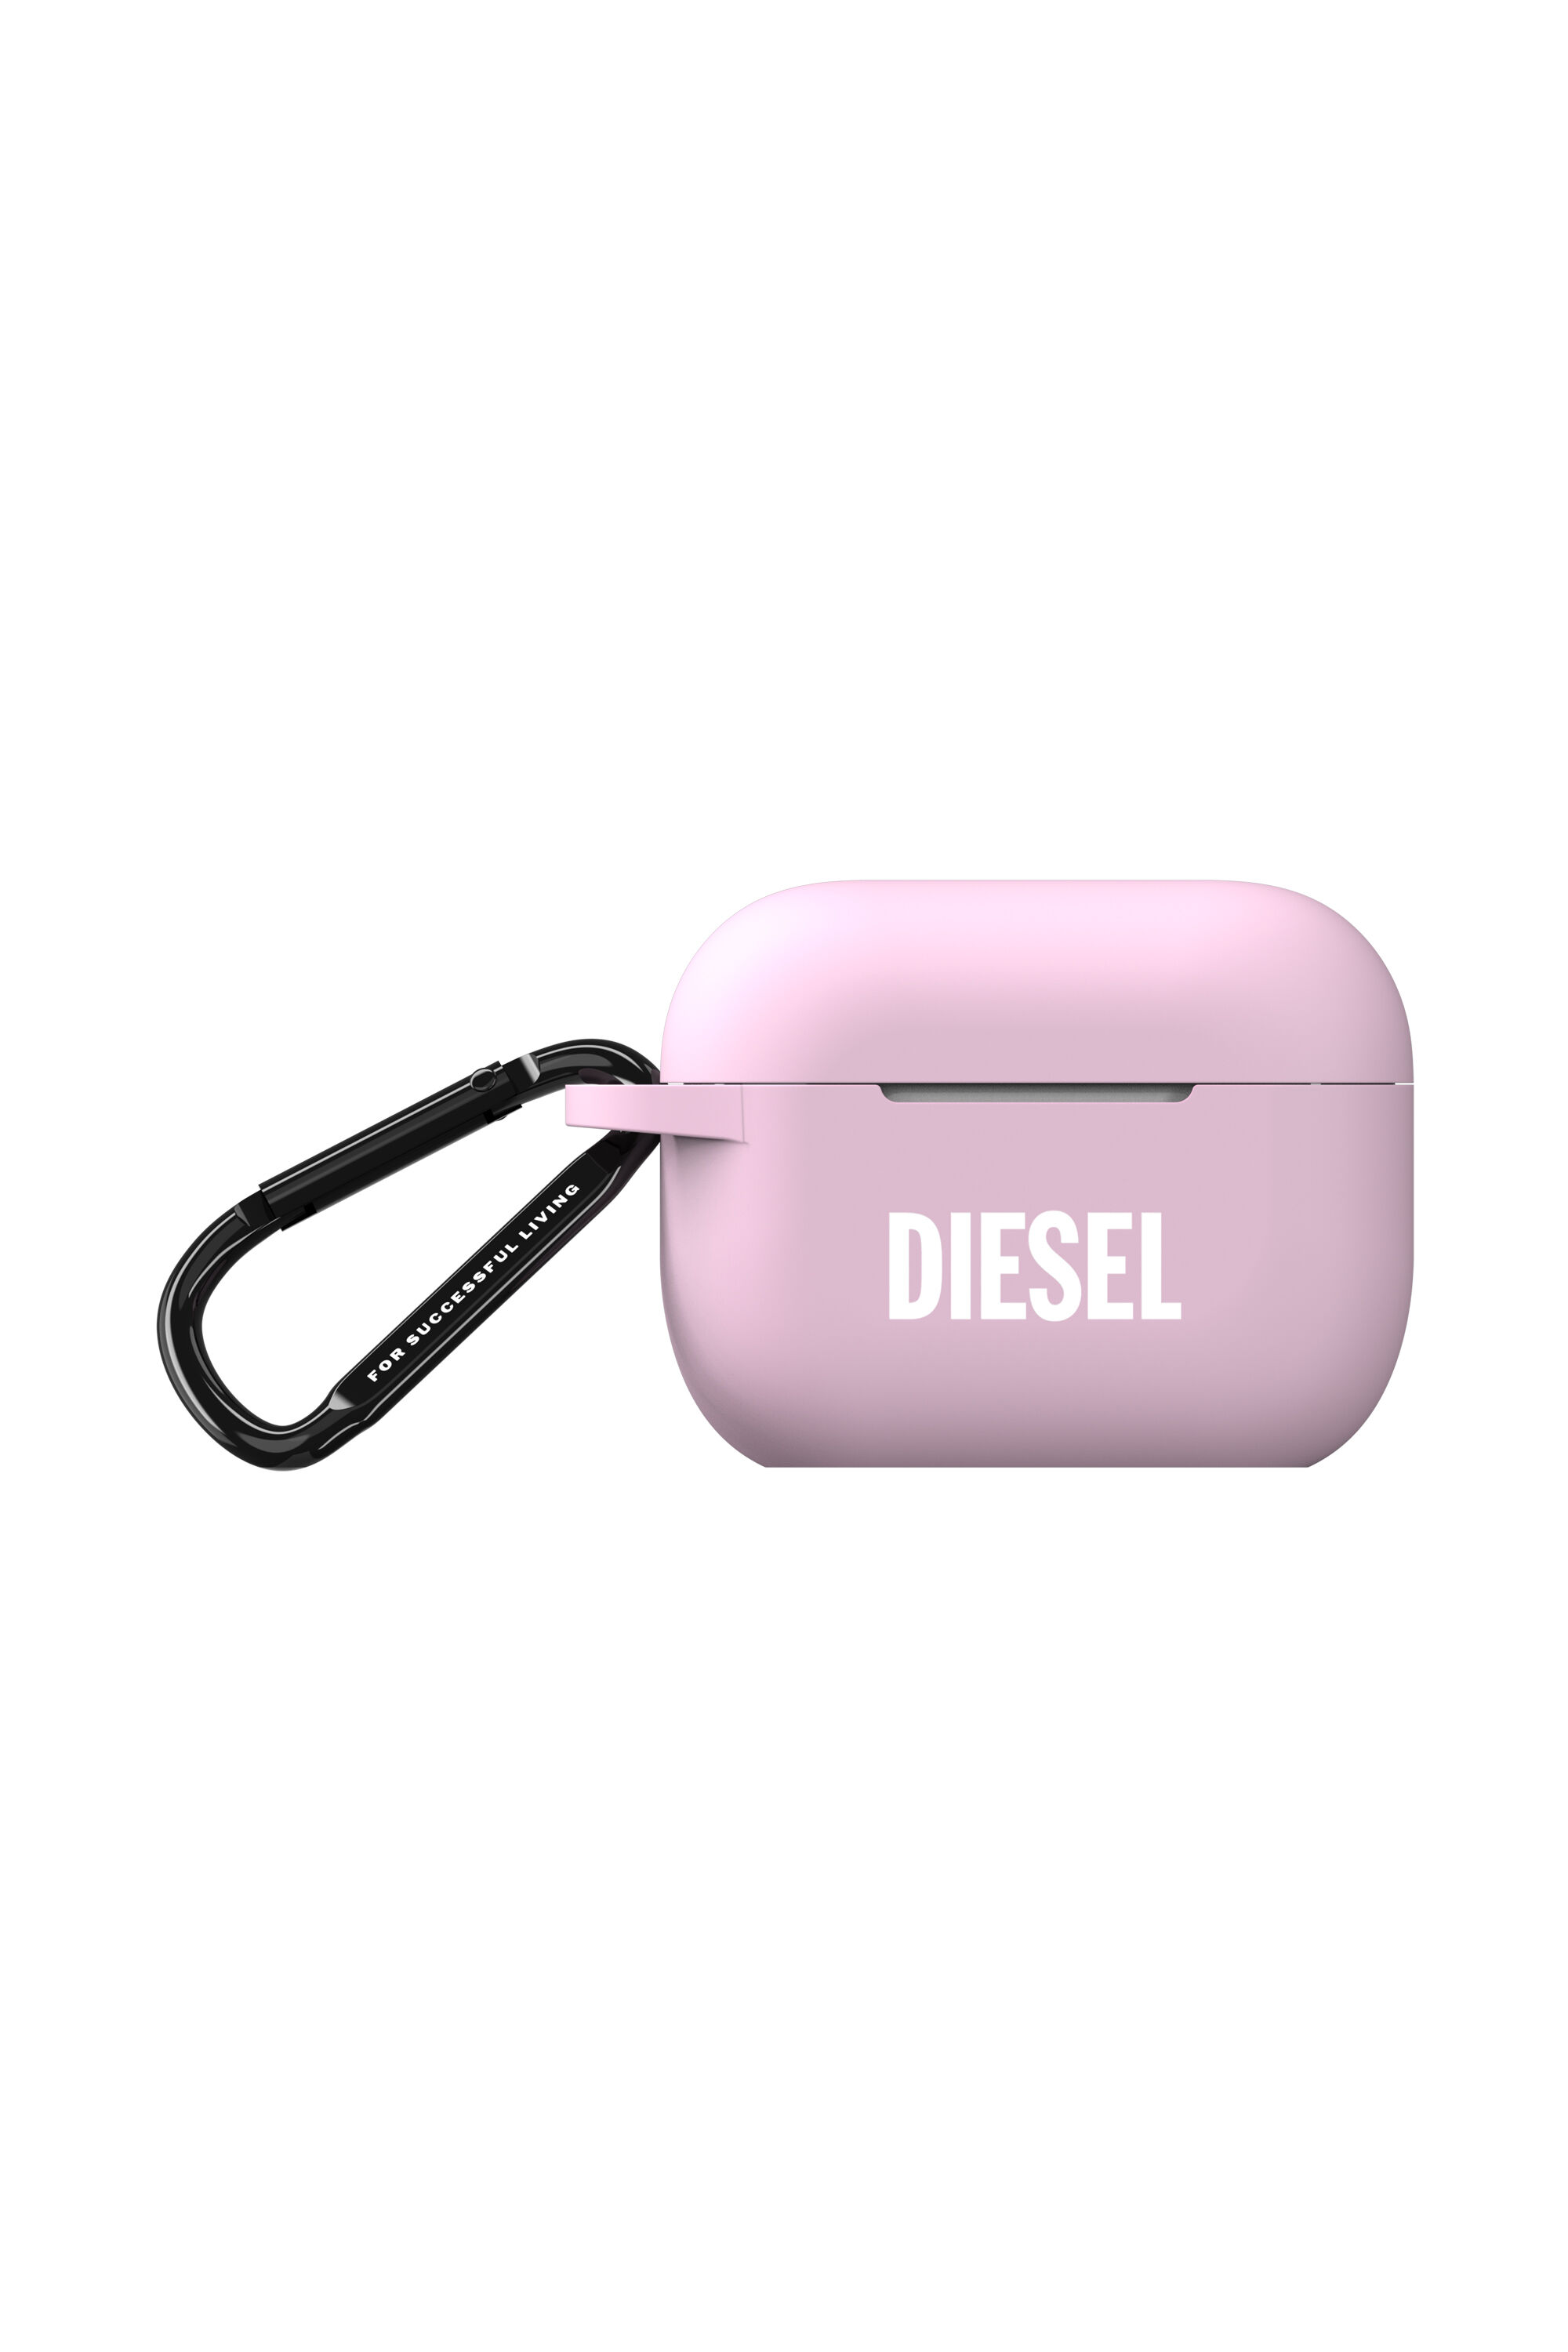 Diesel - 49862 AIRPOD CASE, Pink - Image 1